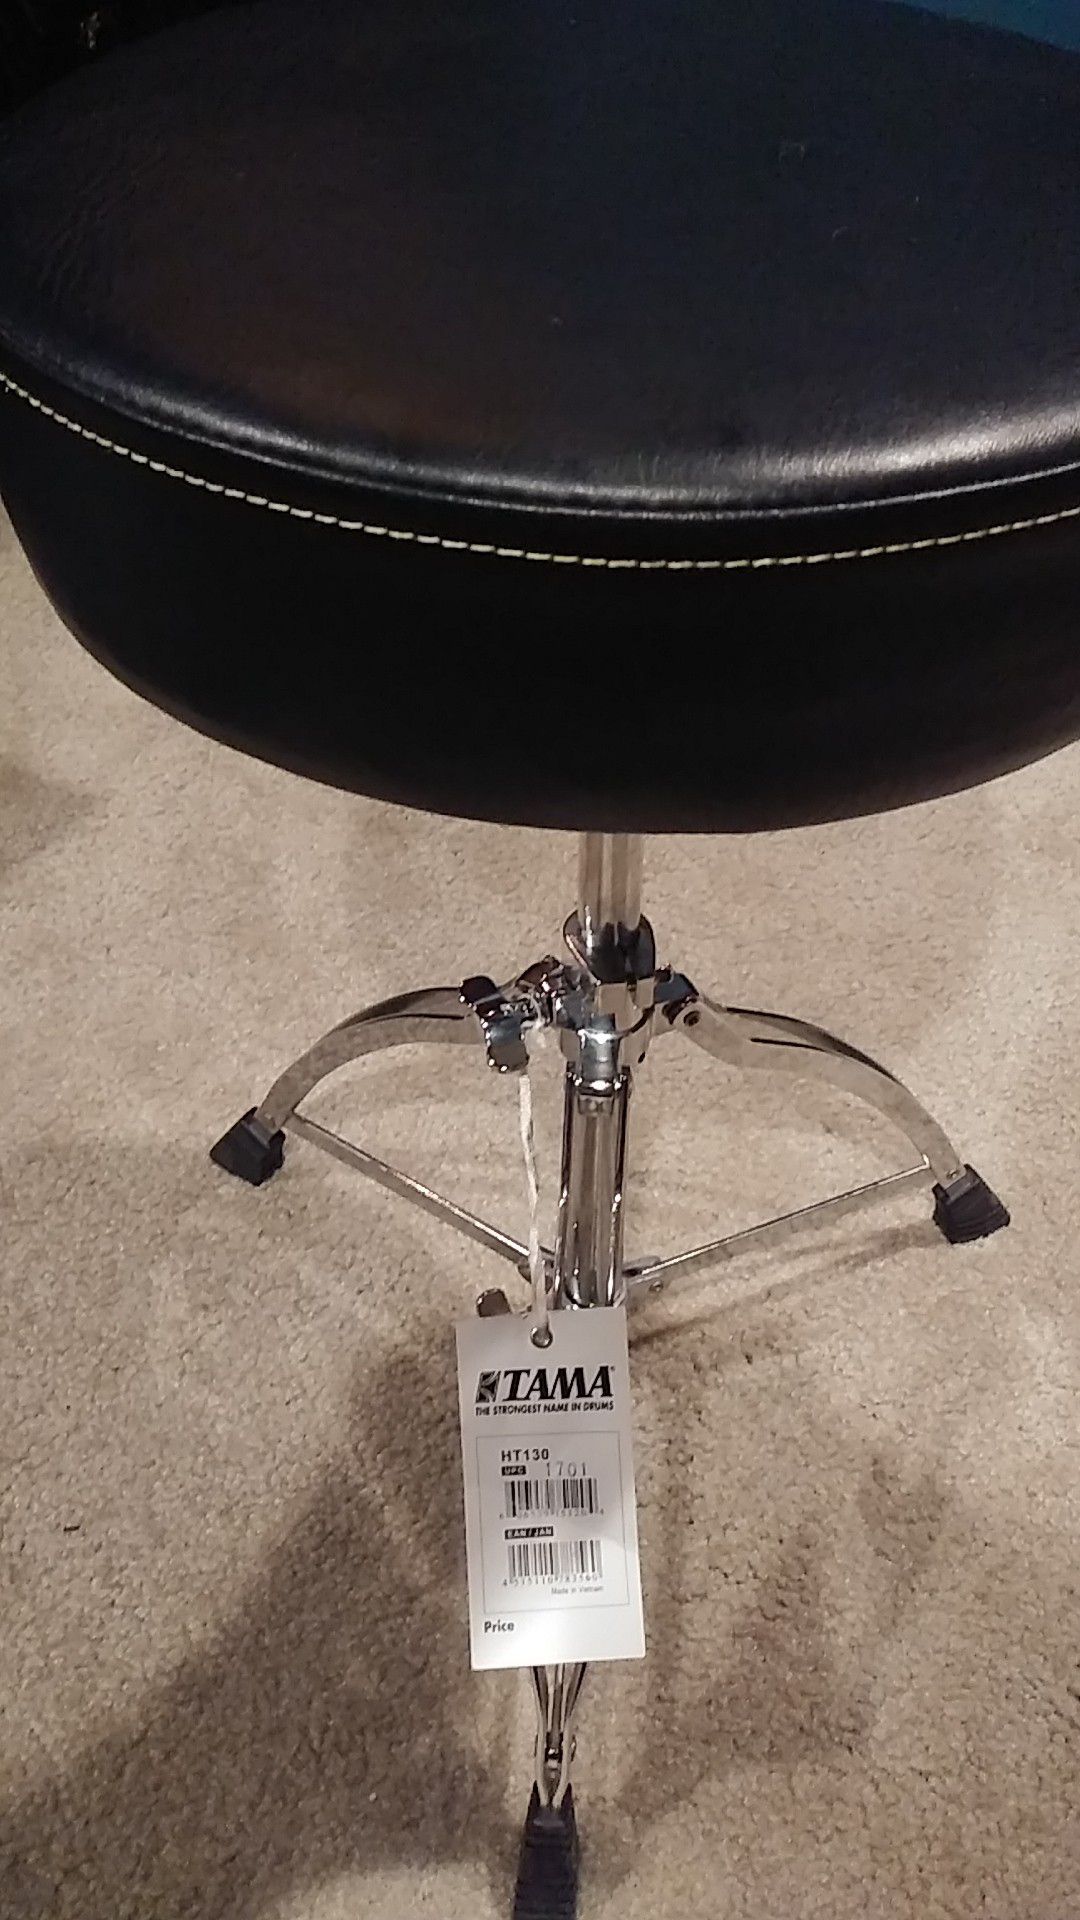 Tama drum throne seat